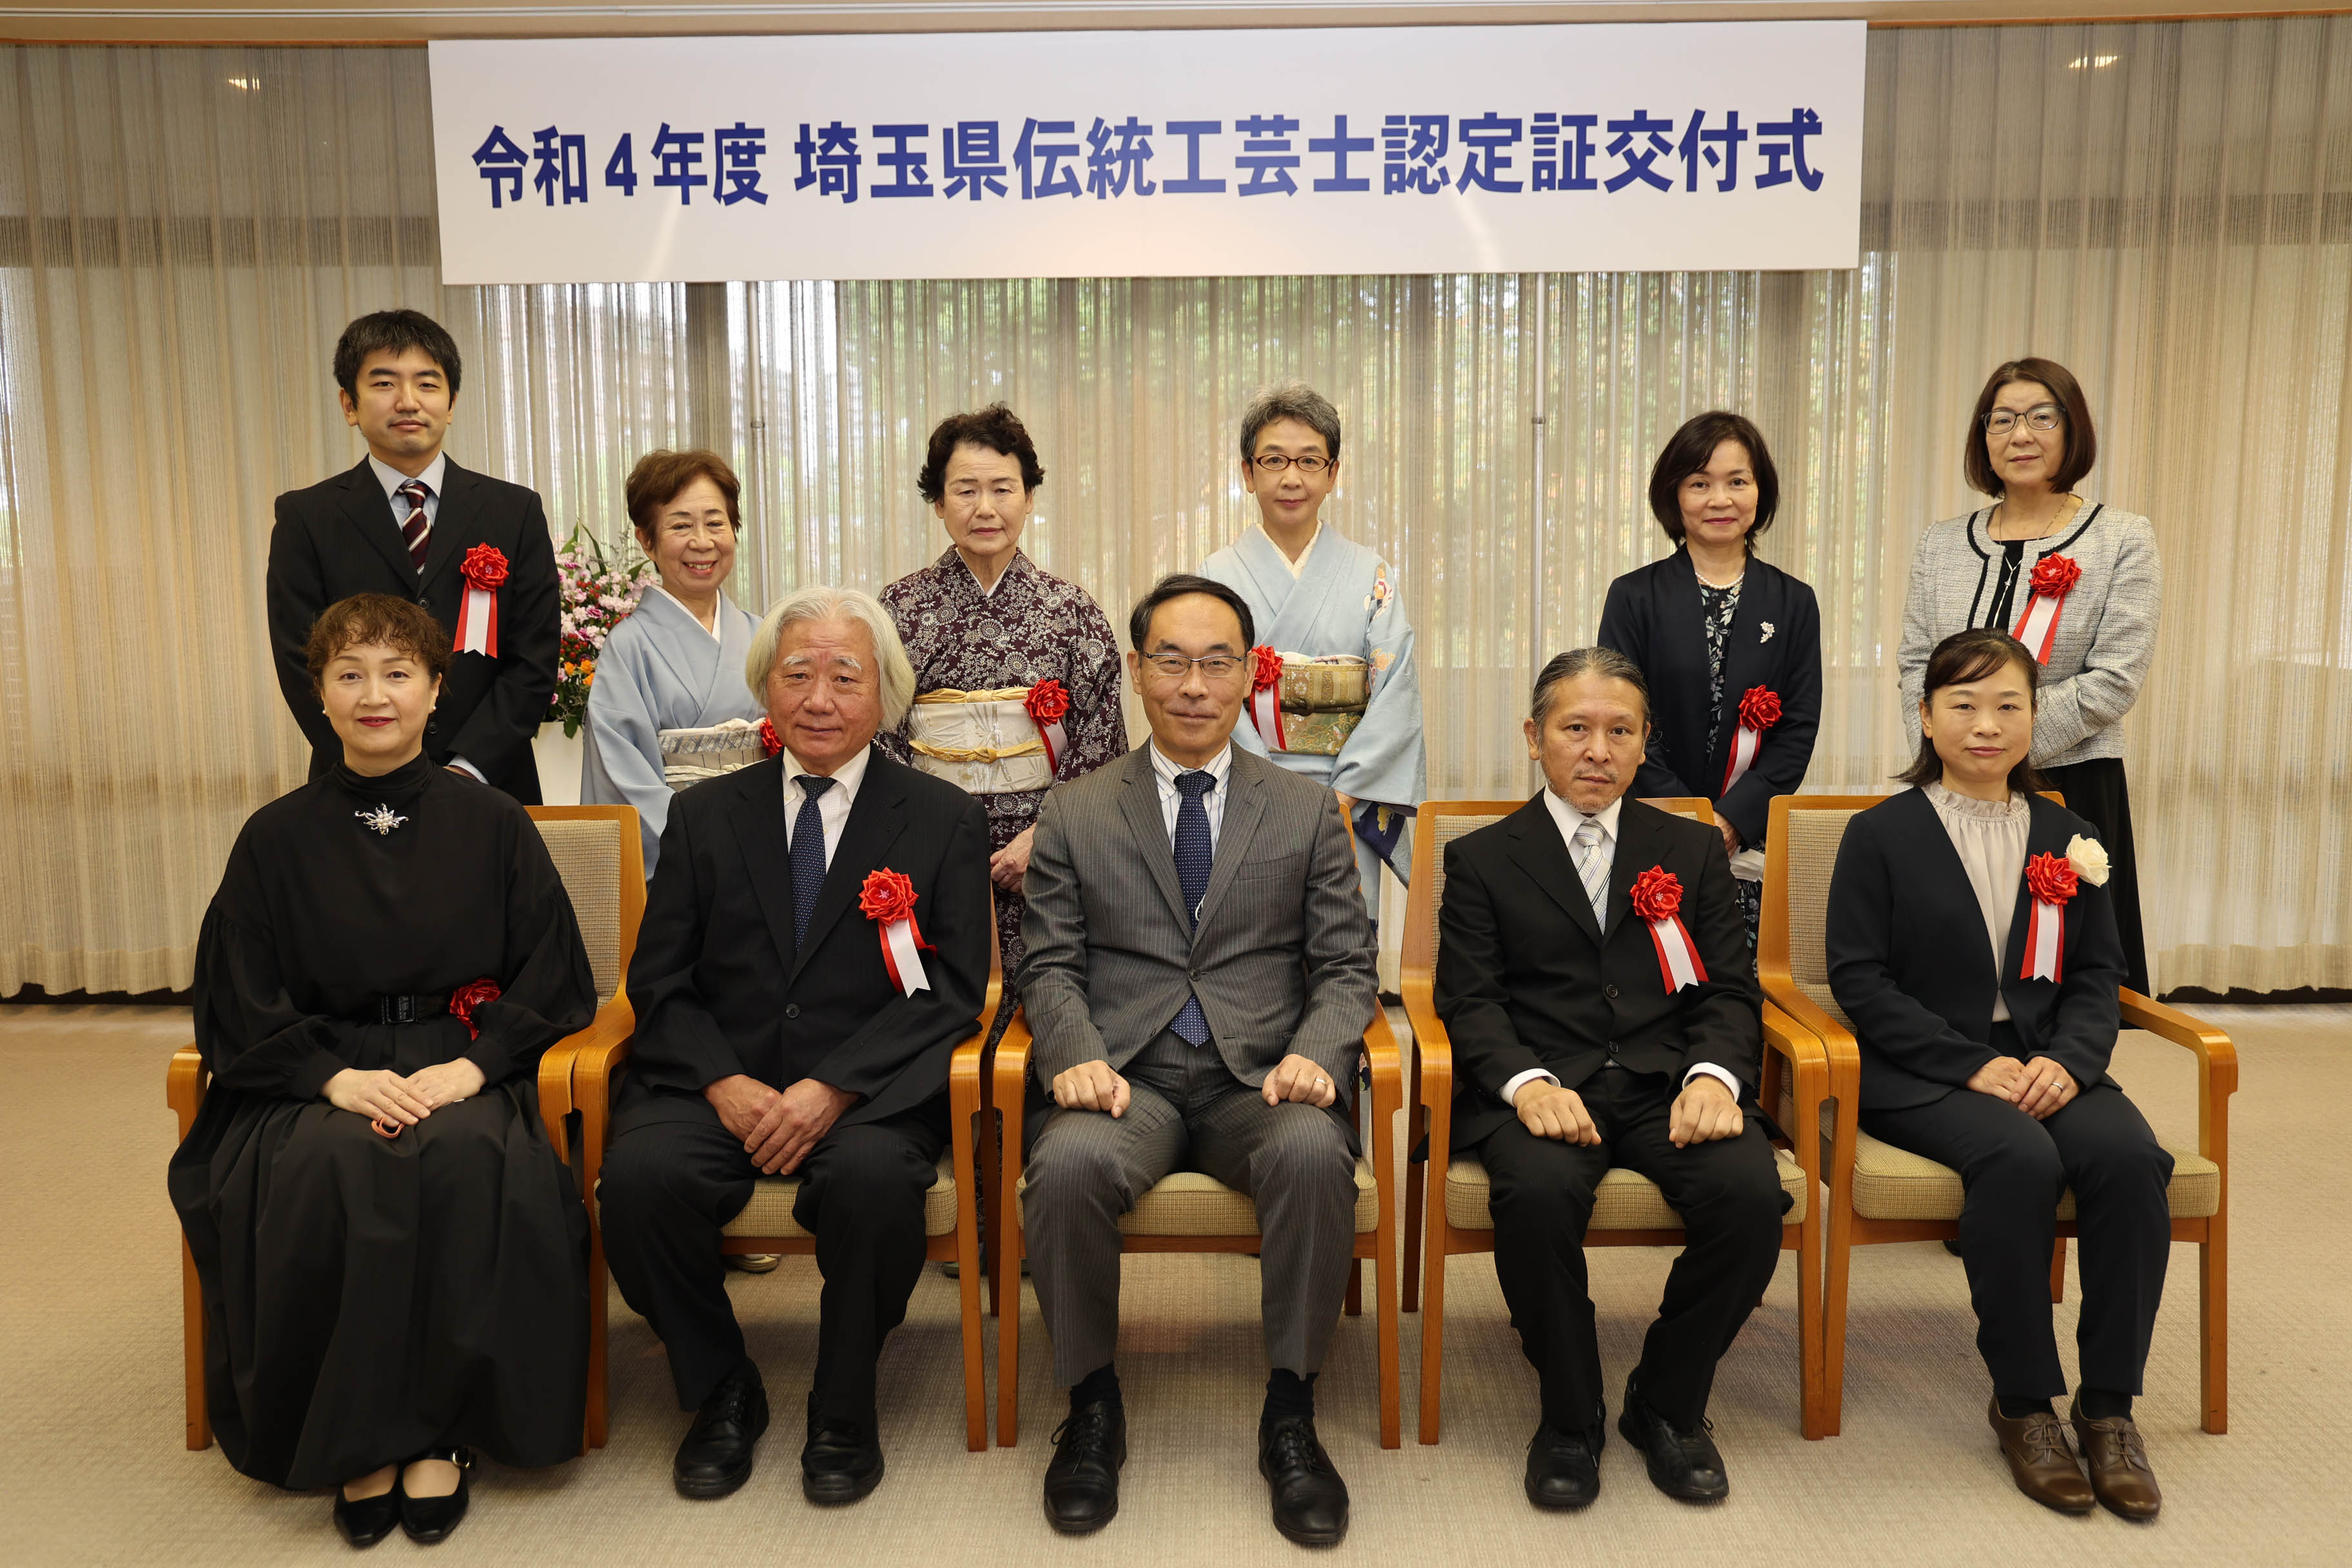 令和4年度埼玉県伝統工芸士認定証交付式で集合写真を撮る知事